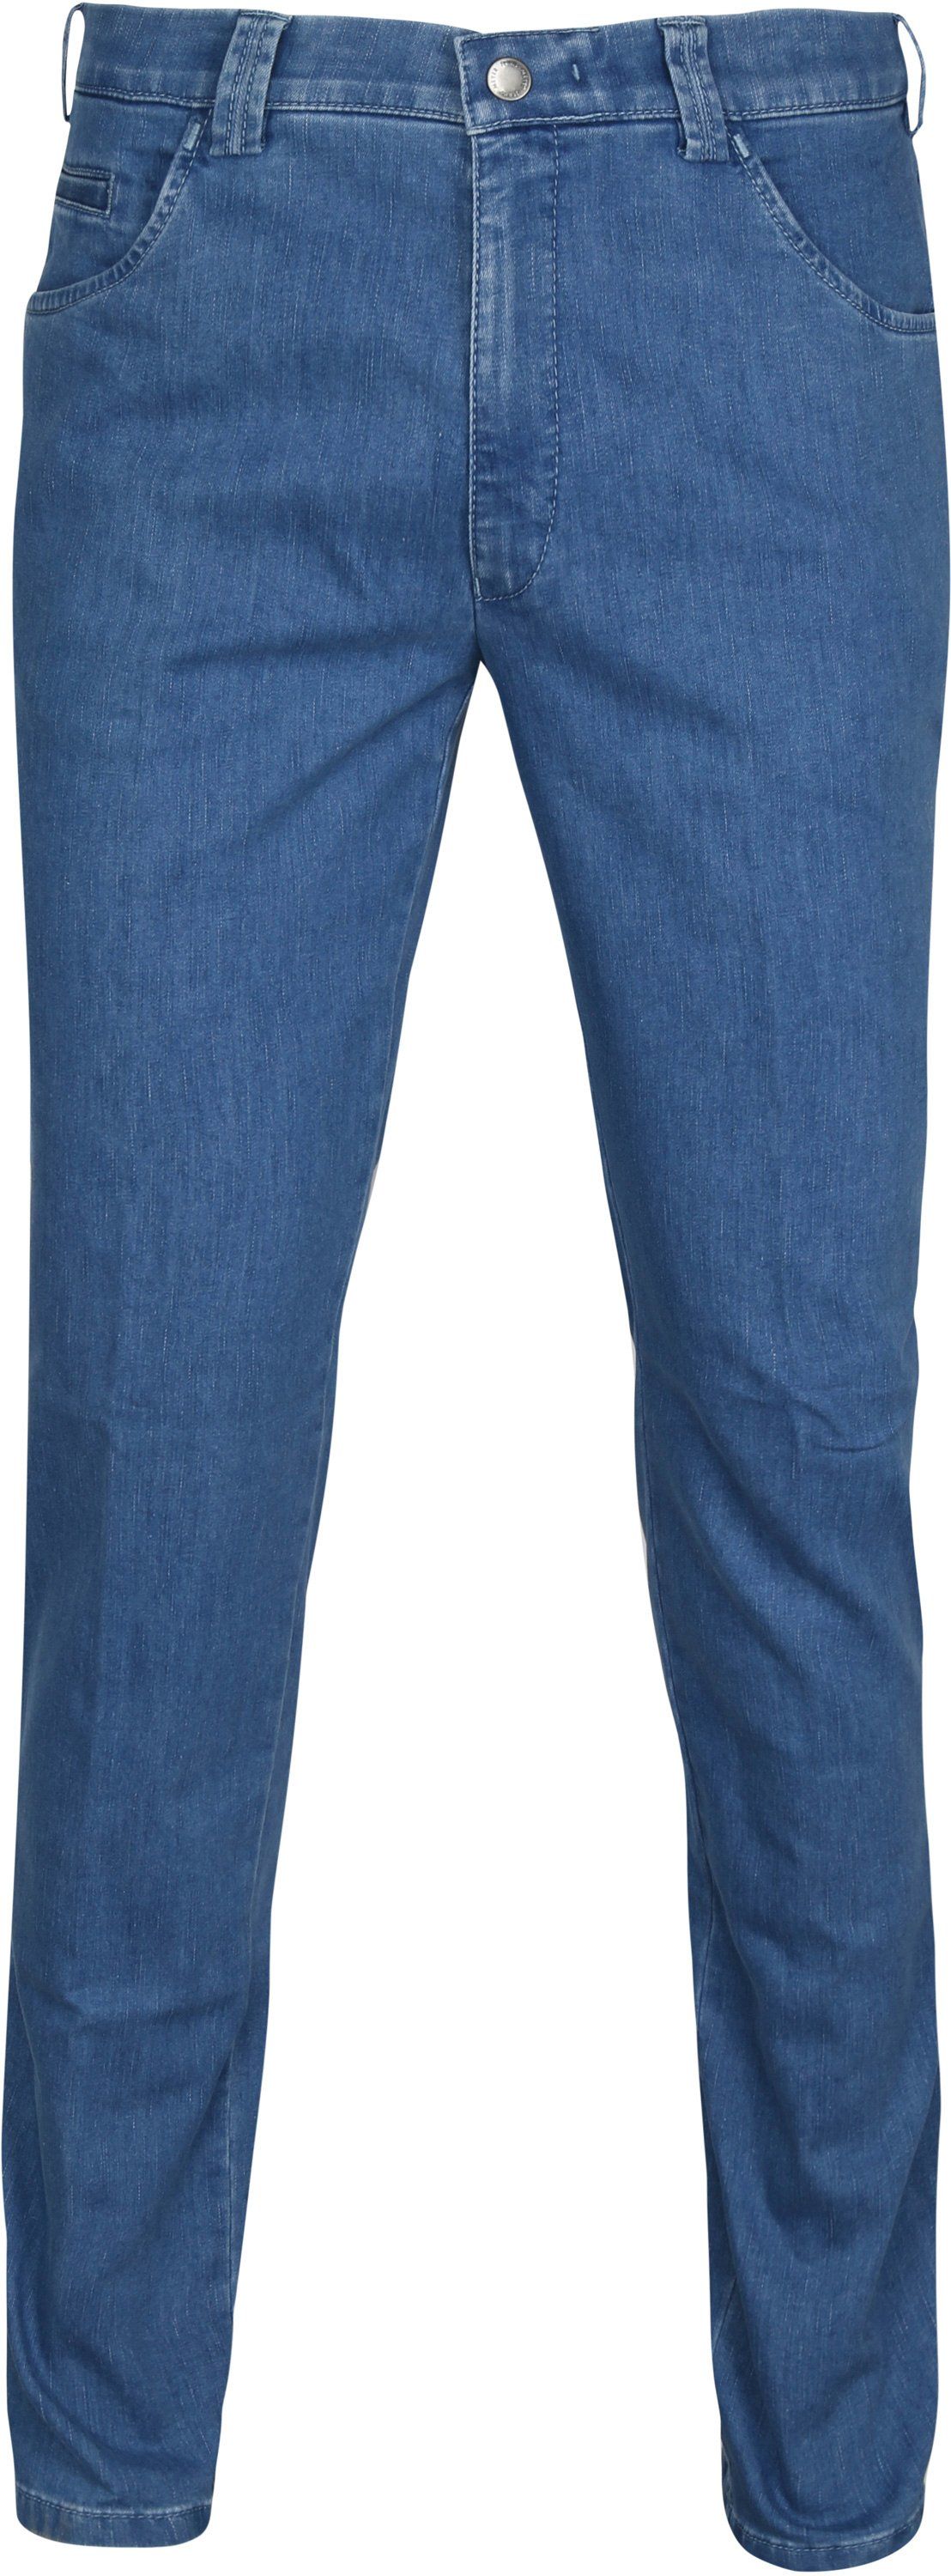 Meyer Jeans Dublin Blue size W 32/33